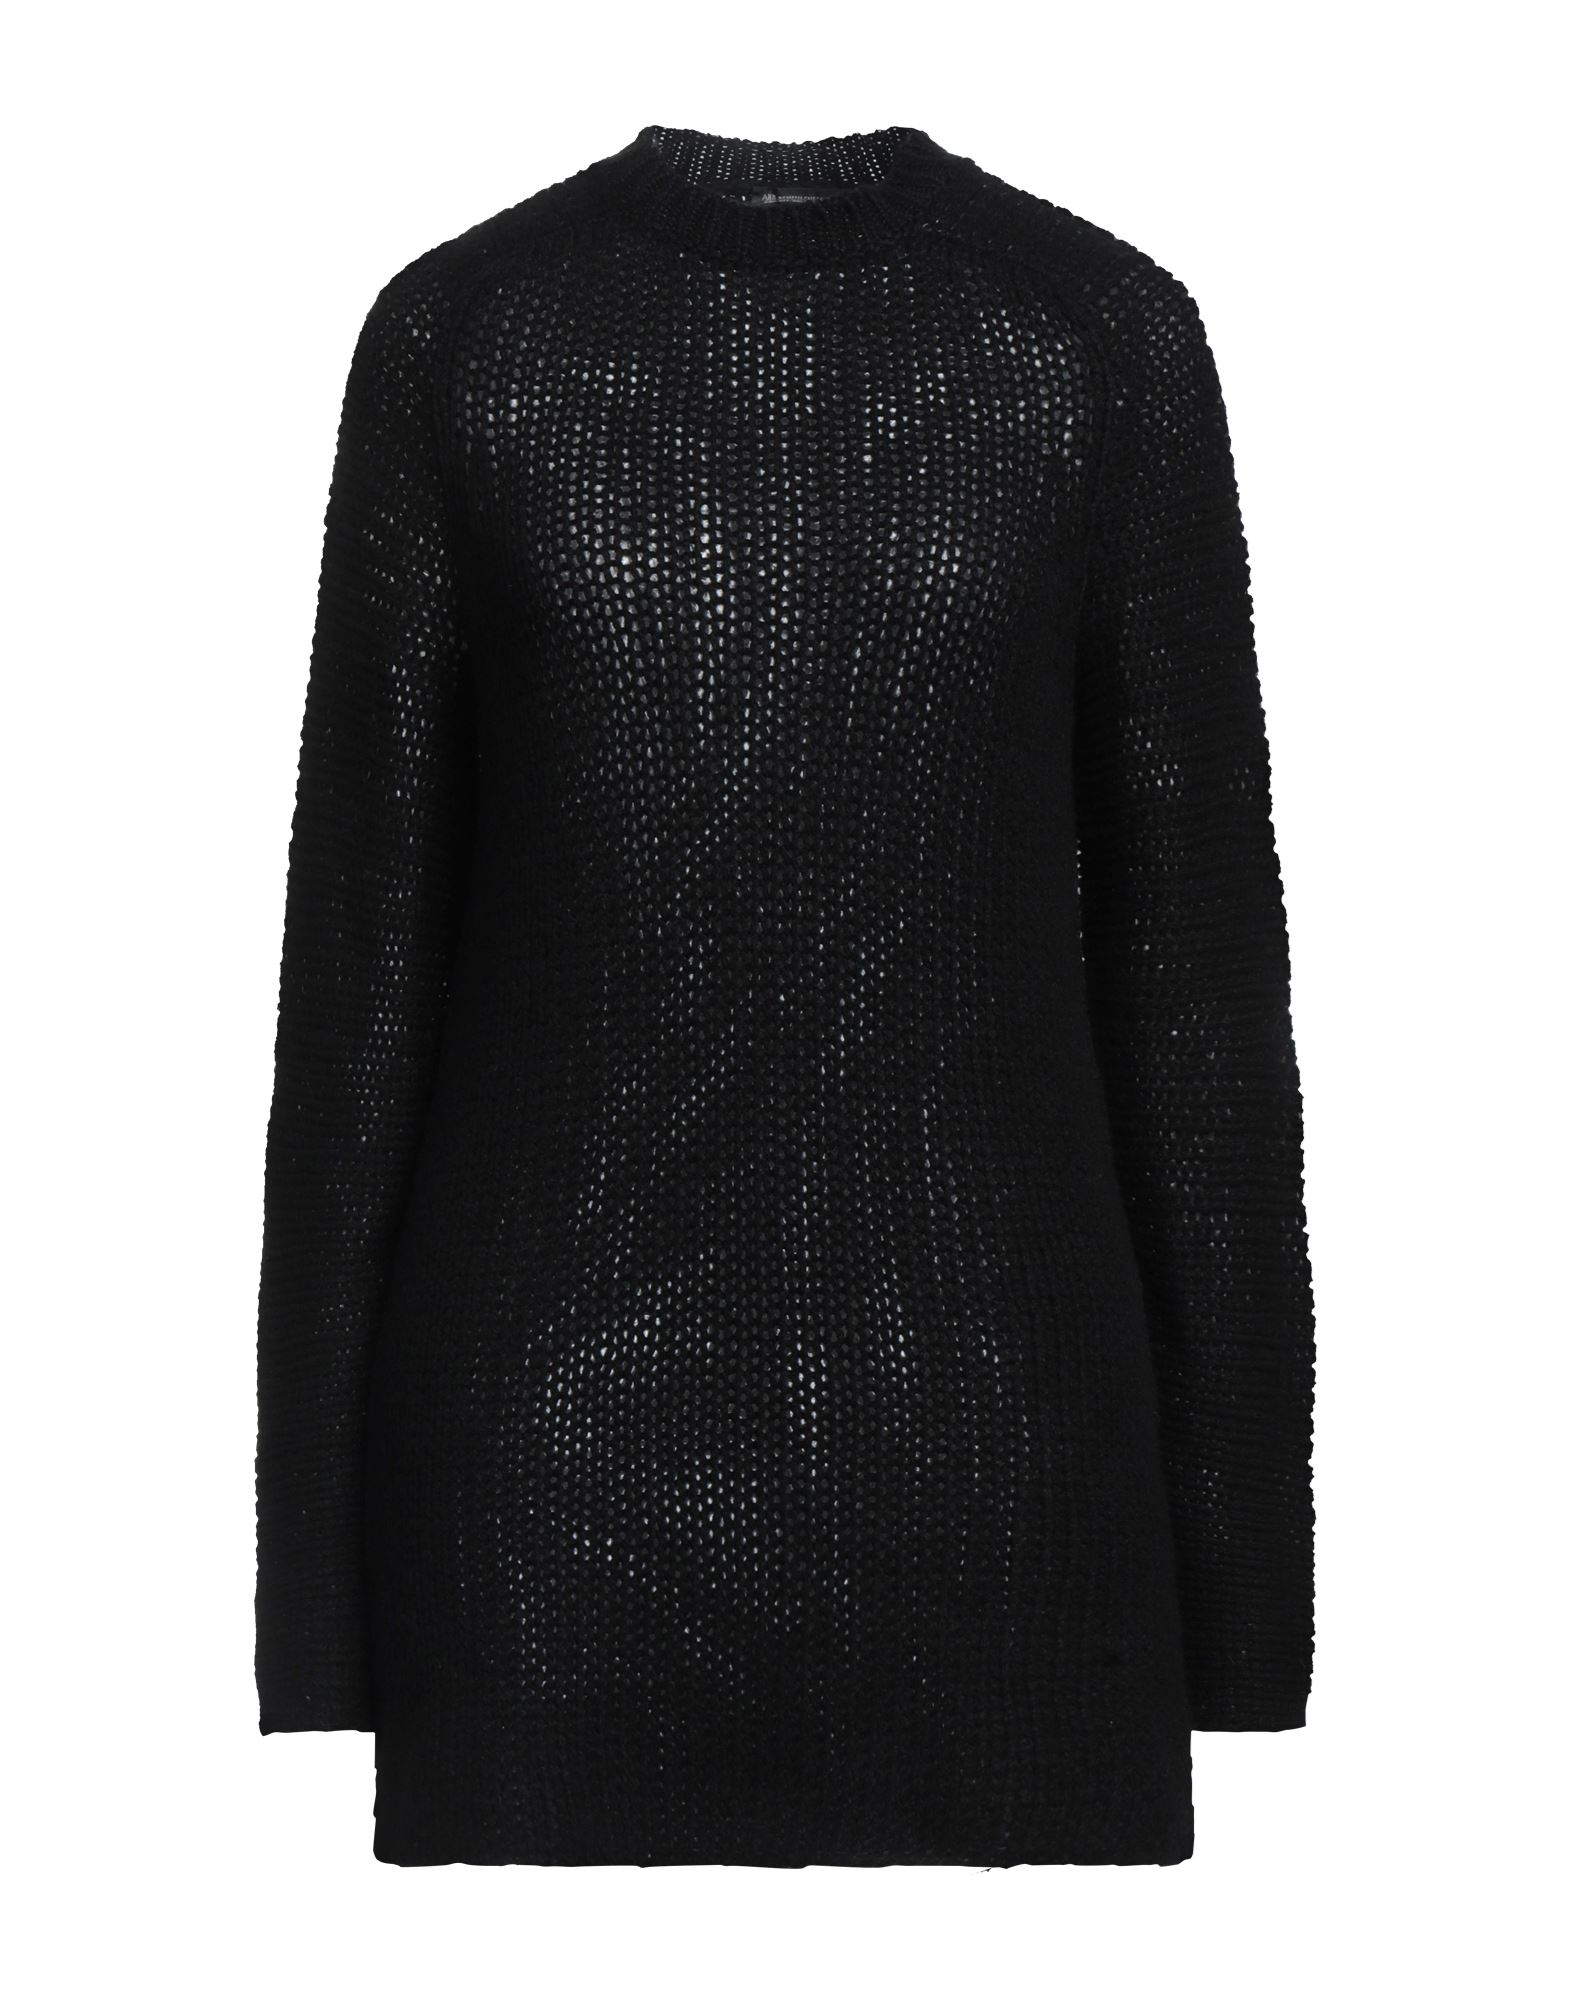 Ann Demeulemeester Sweaters In Black